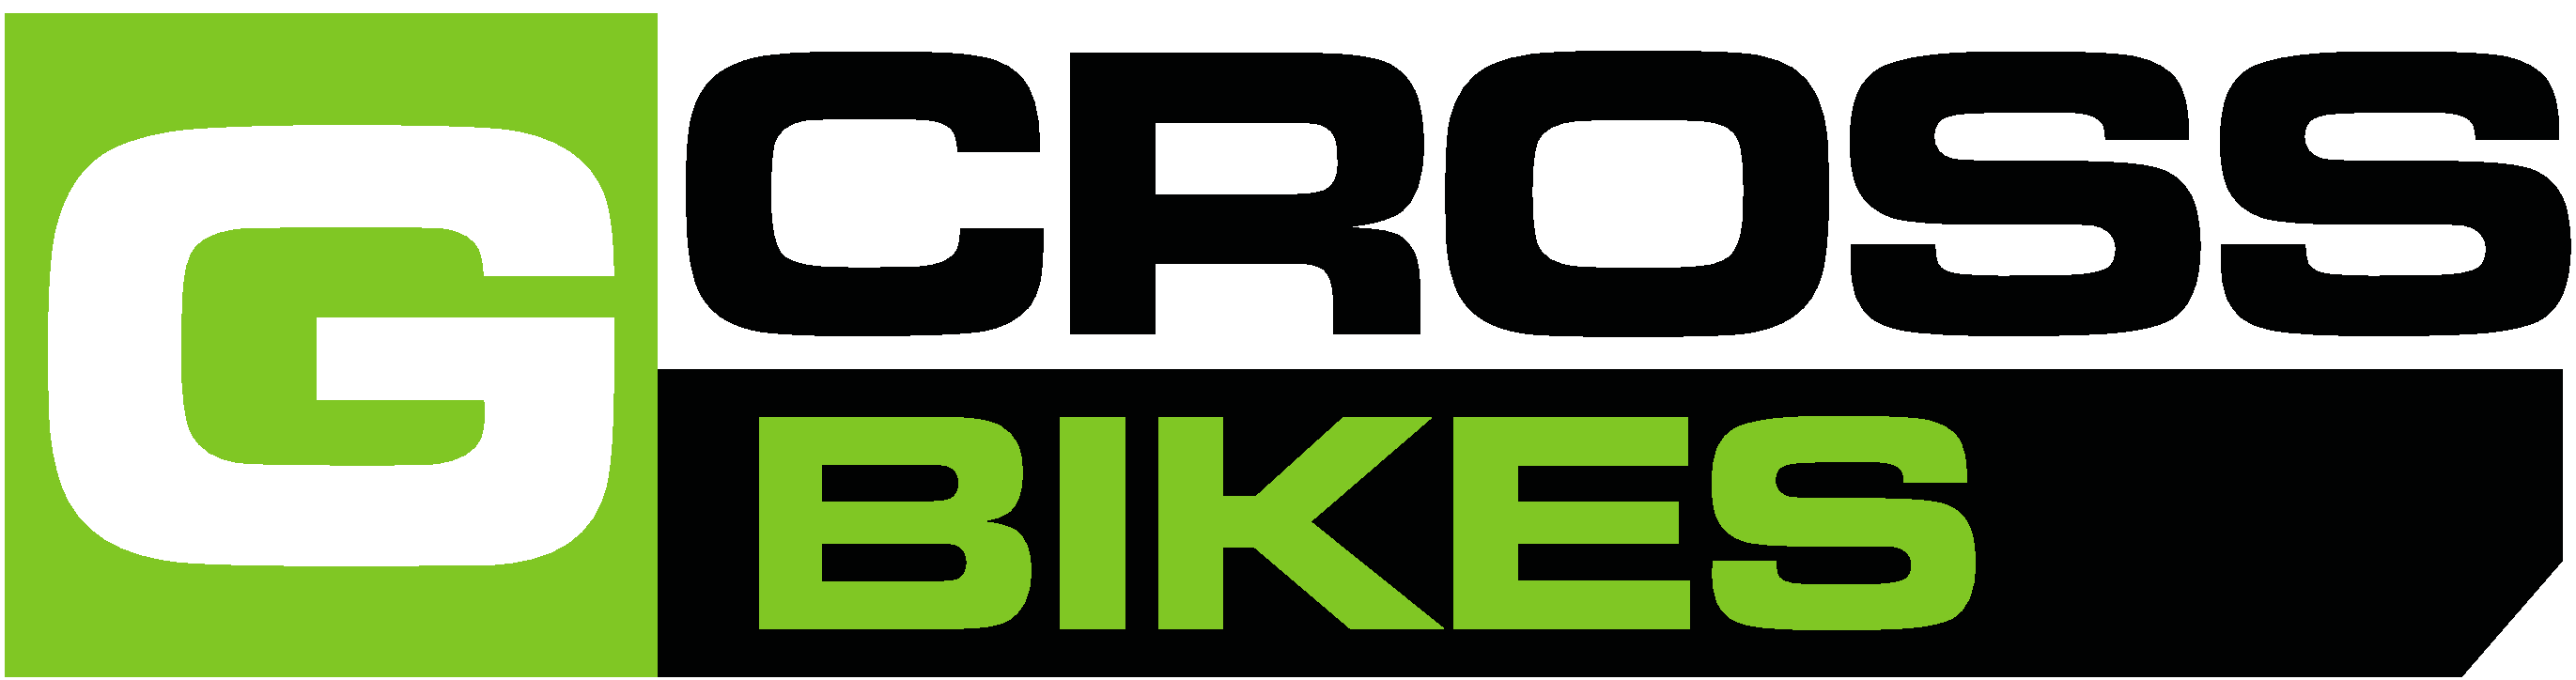 Gcross Bikes